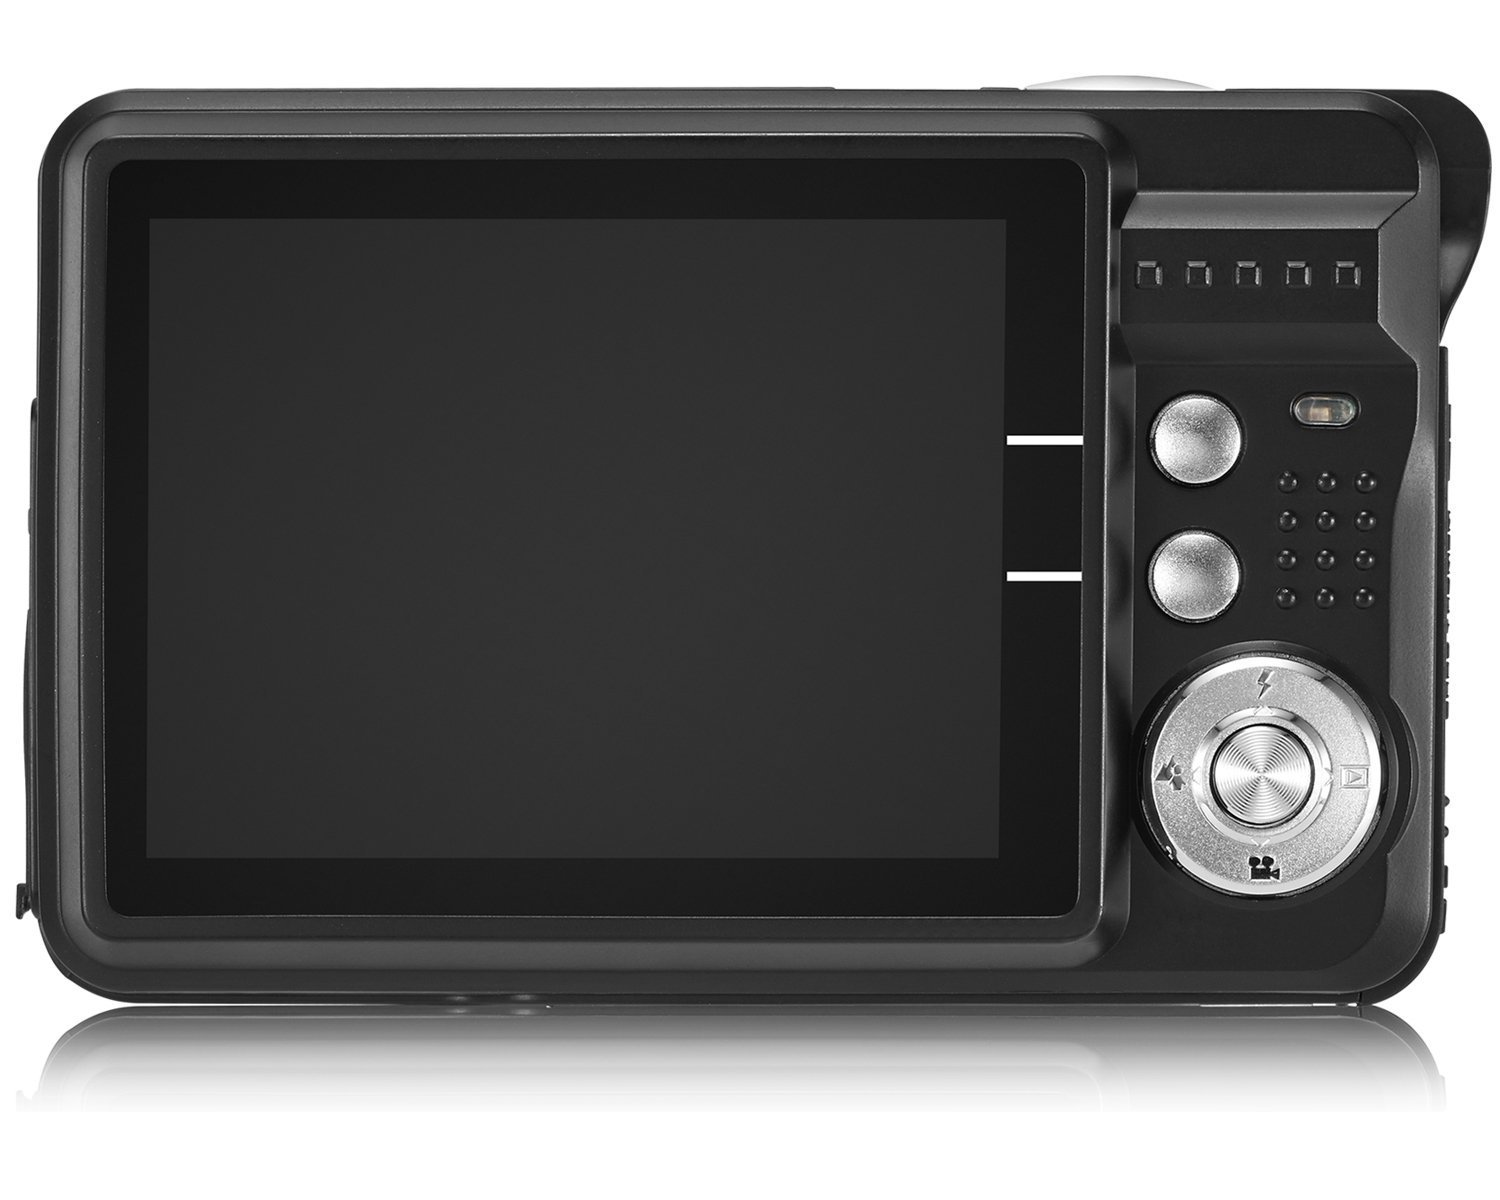 AbergBest LCD HD Digitale videocamera